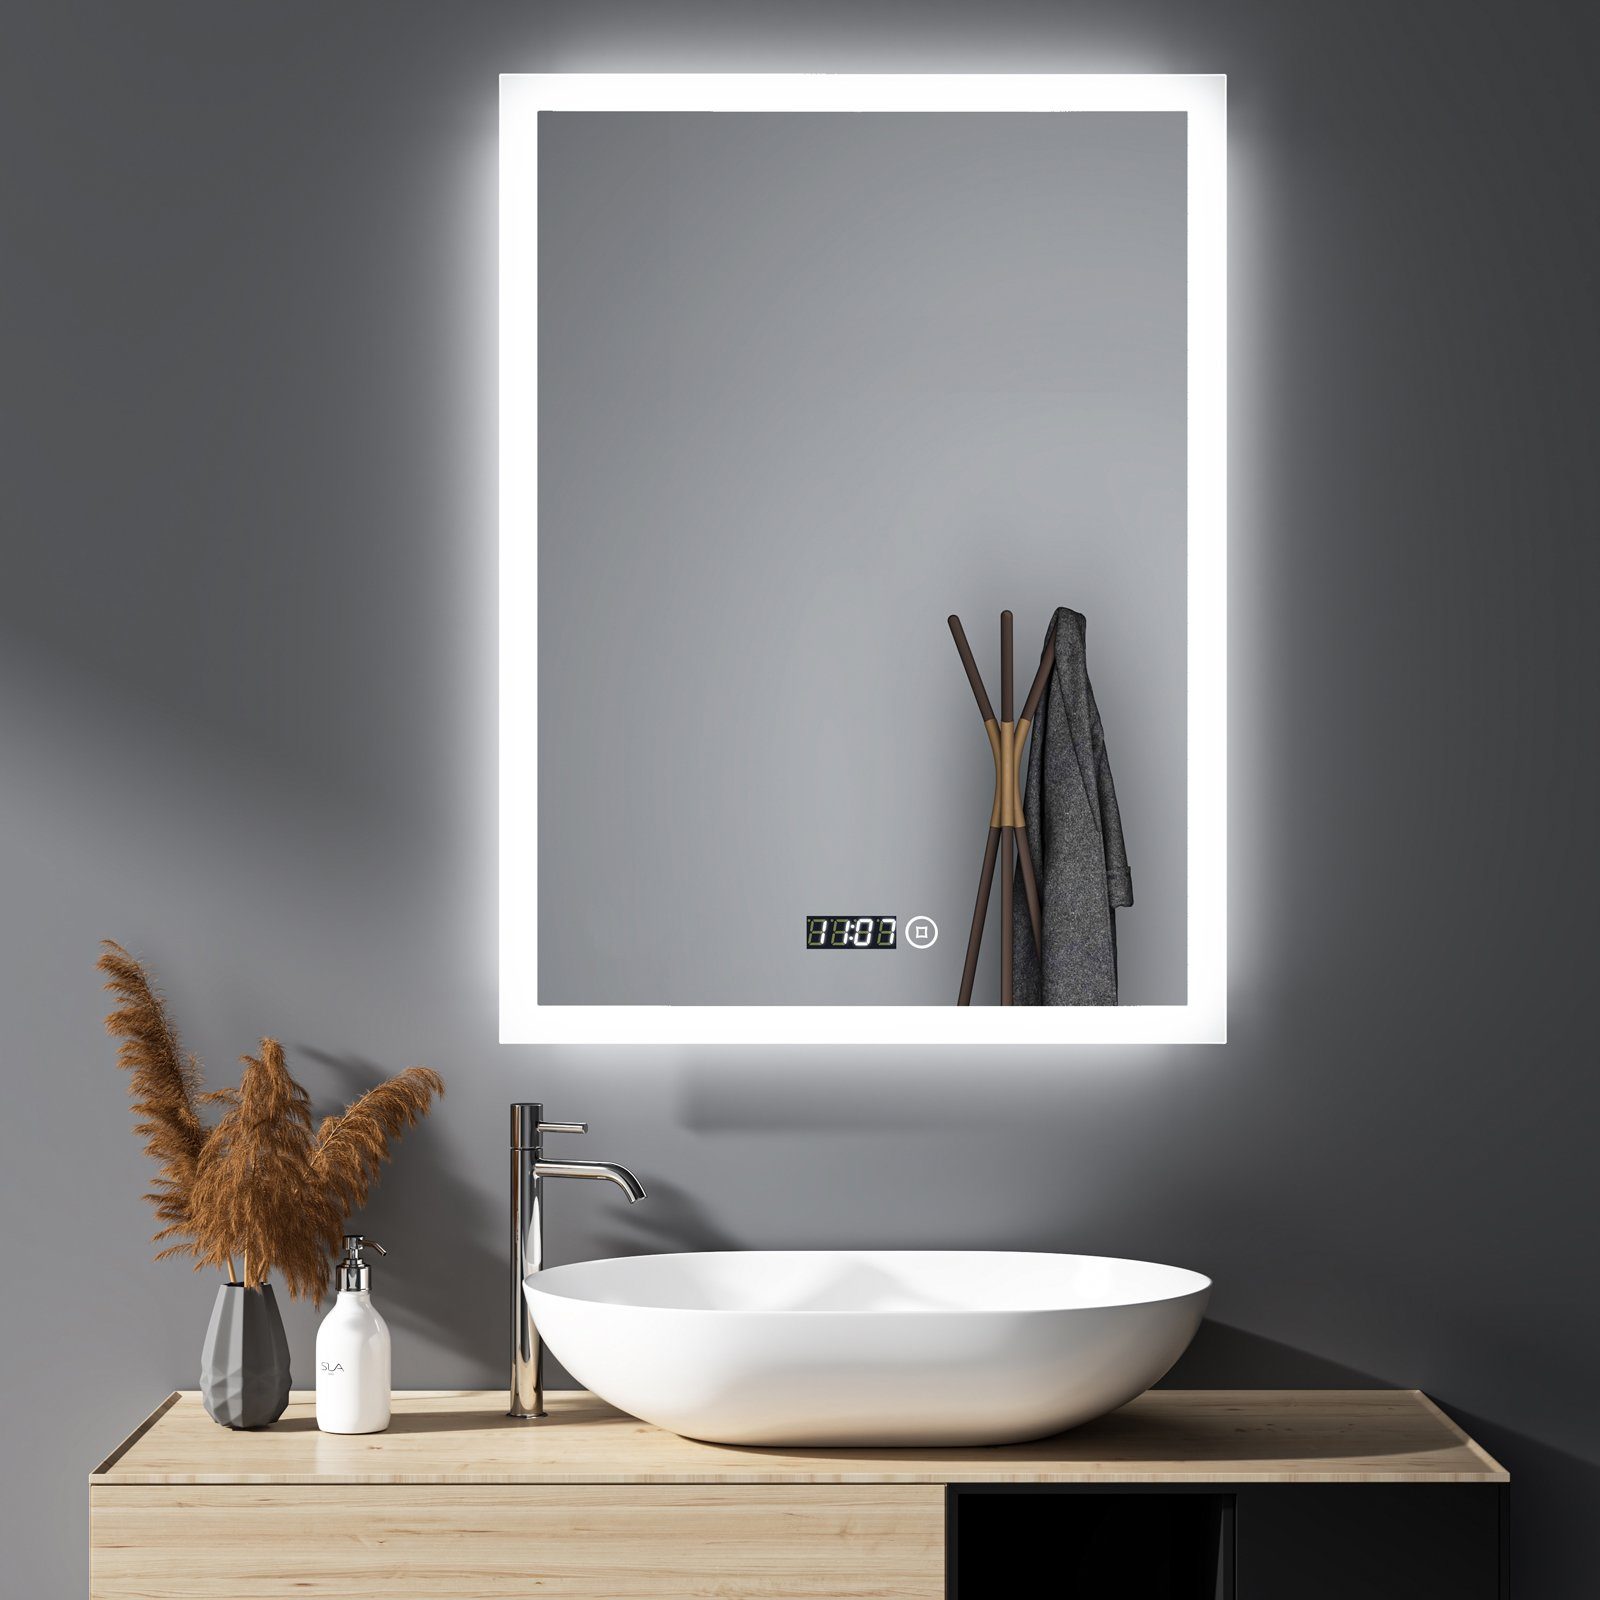 WDWRITTI Badspiegel LED Badspiegel Touch 50x70 Dimmbar Uhr Spiegel Bad mit  beleuchtung (Wandspiegel 3Lichtfarben, Kaltweiß/Neutral/Warmweiß), Memory  Funktion